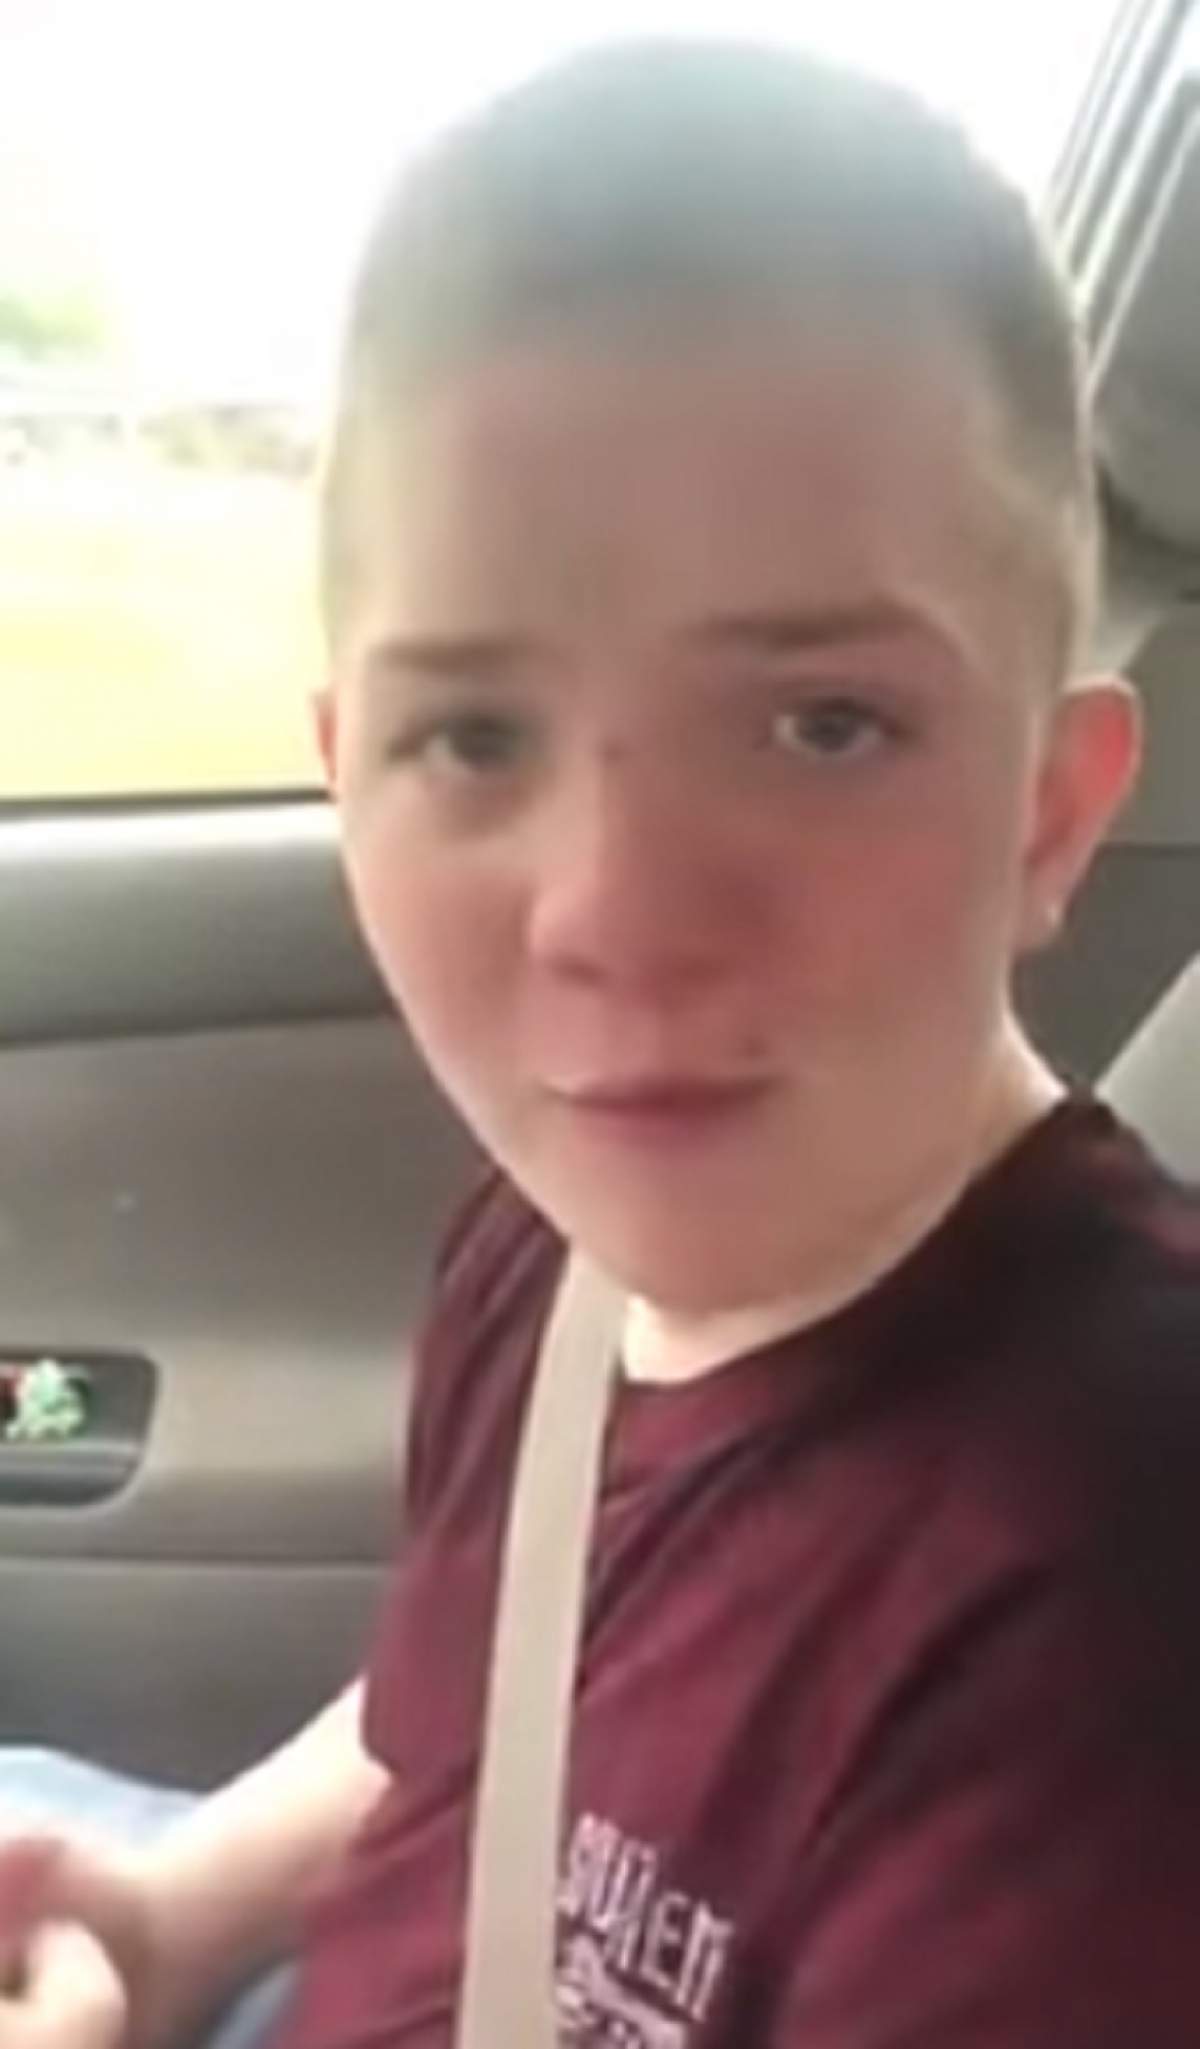 VIDEO / A fost umilit de toată lumea pentru aspecul fizic: "Râd de nasul meu!" Ce a făcut mama sa pentru a-l apăra a ajuns viral